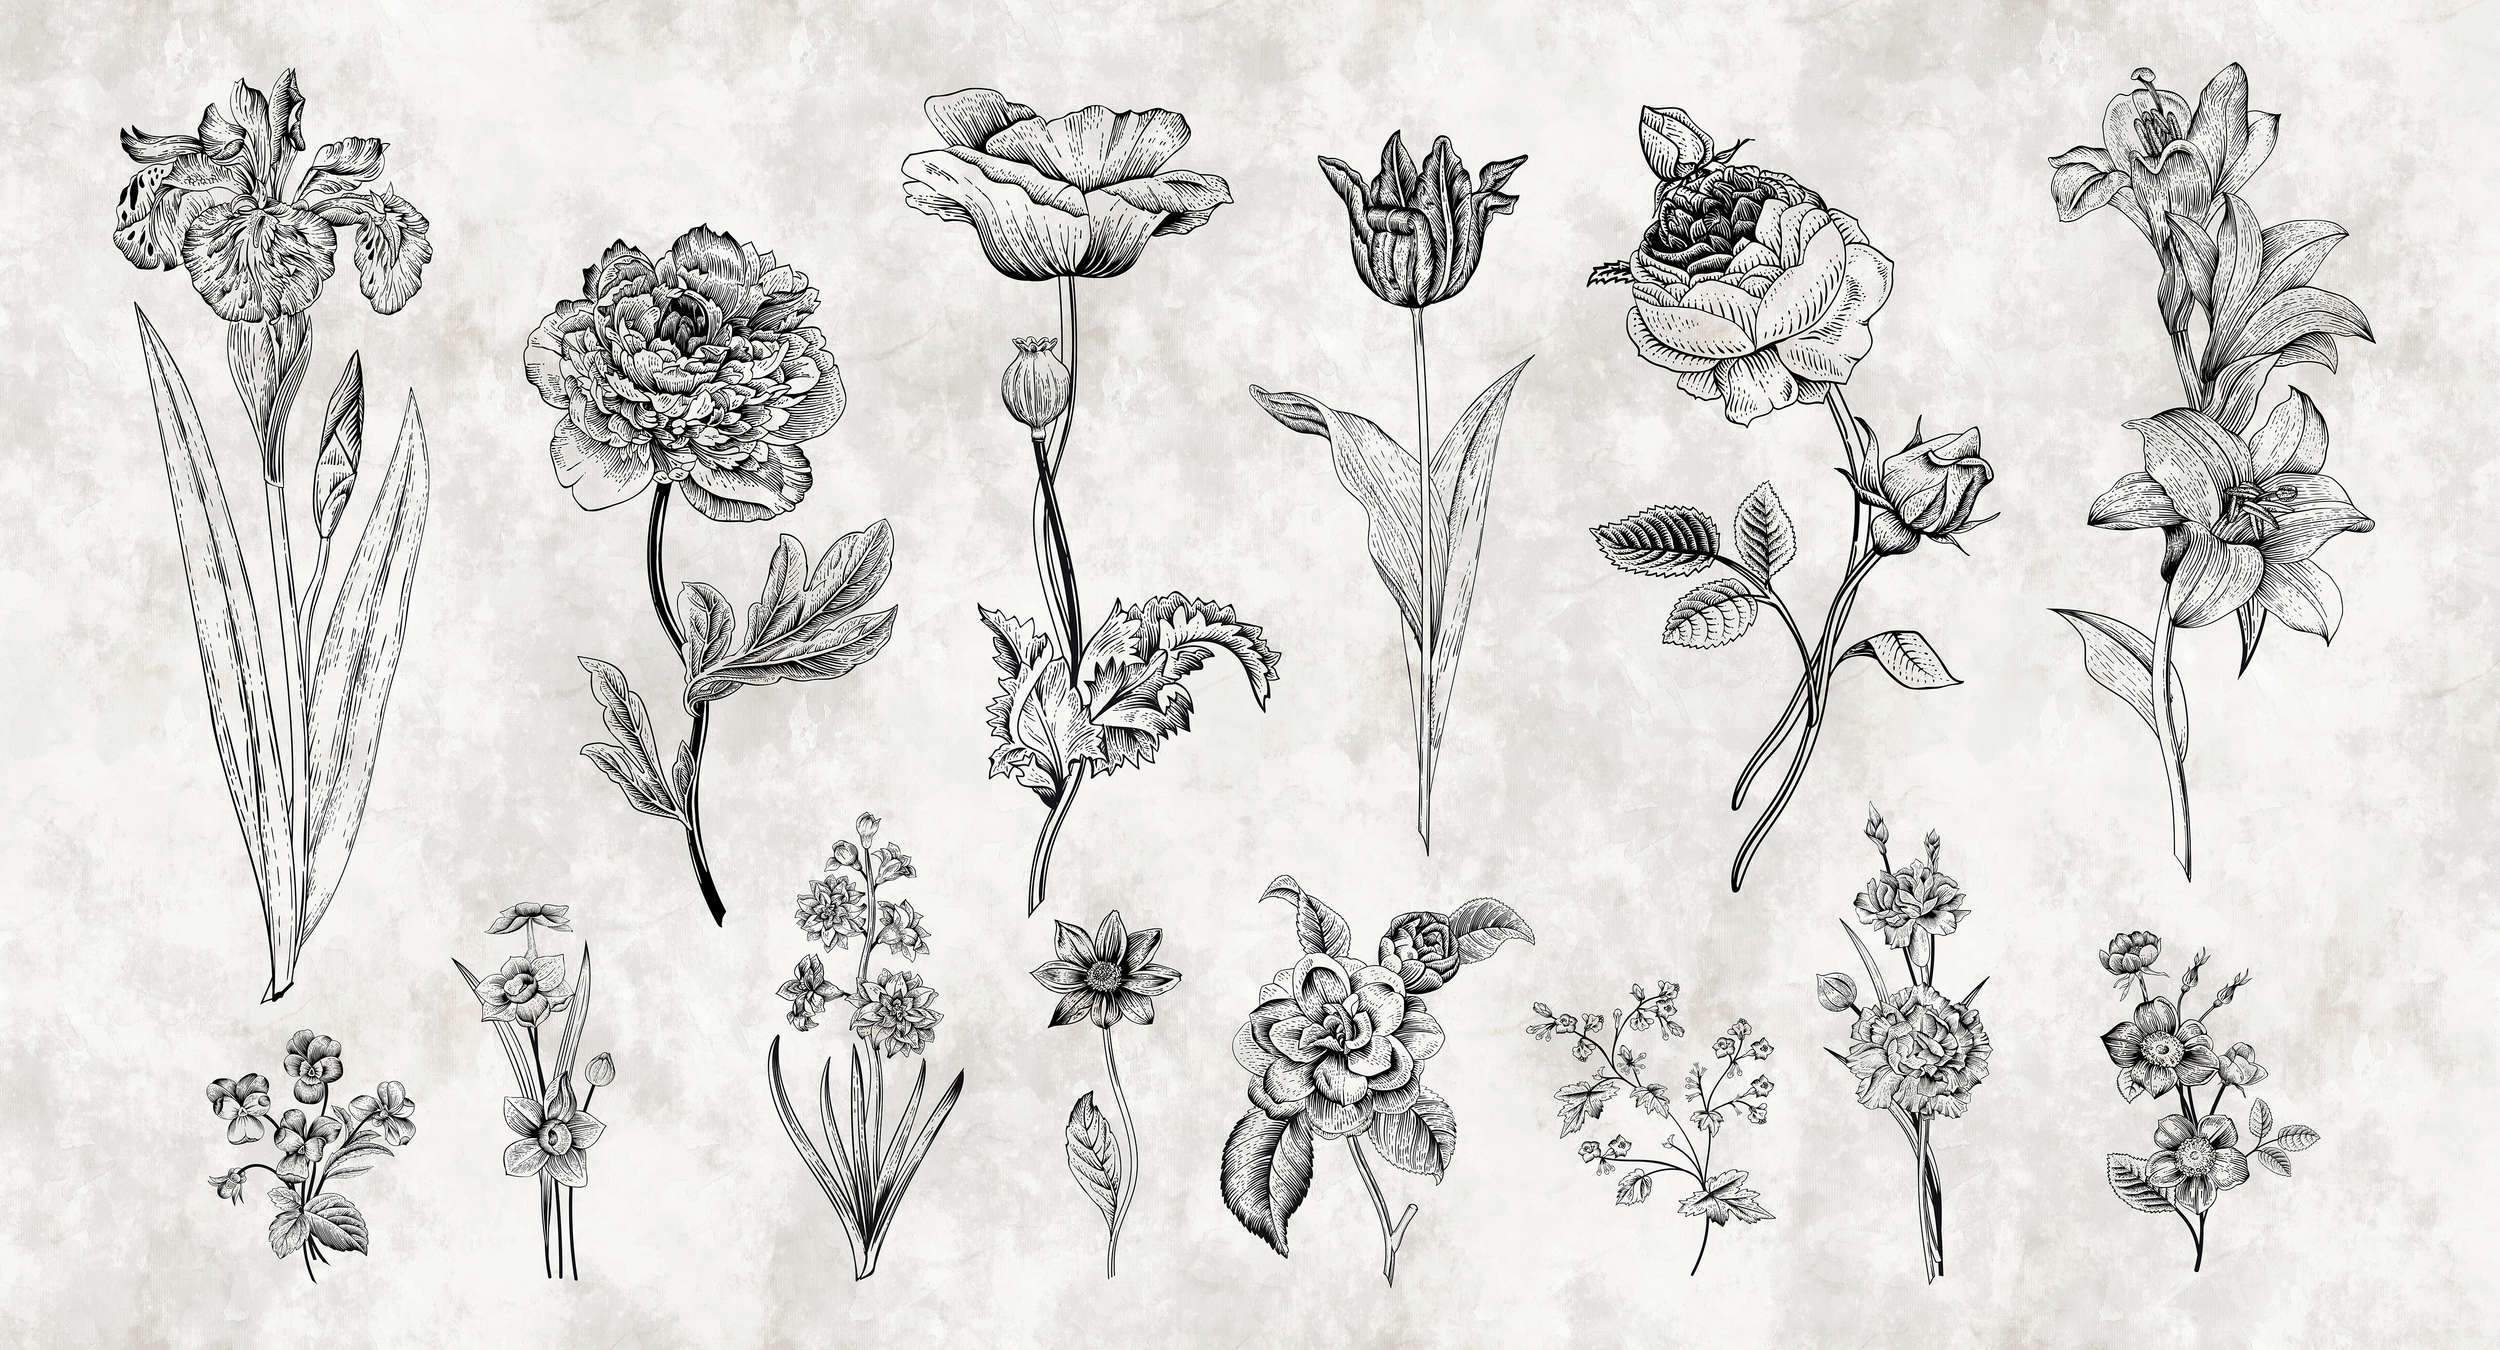             Muurschildering Bloemen in tekenstijl - Wit, Zwart
        